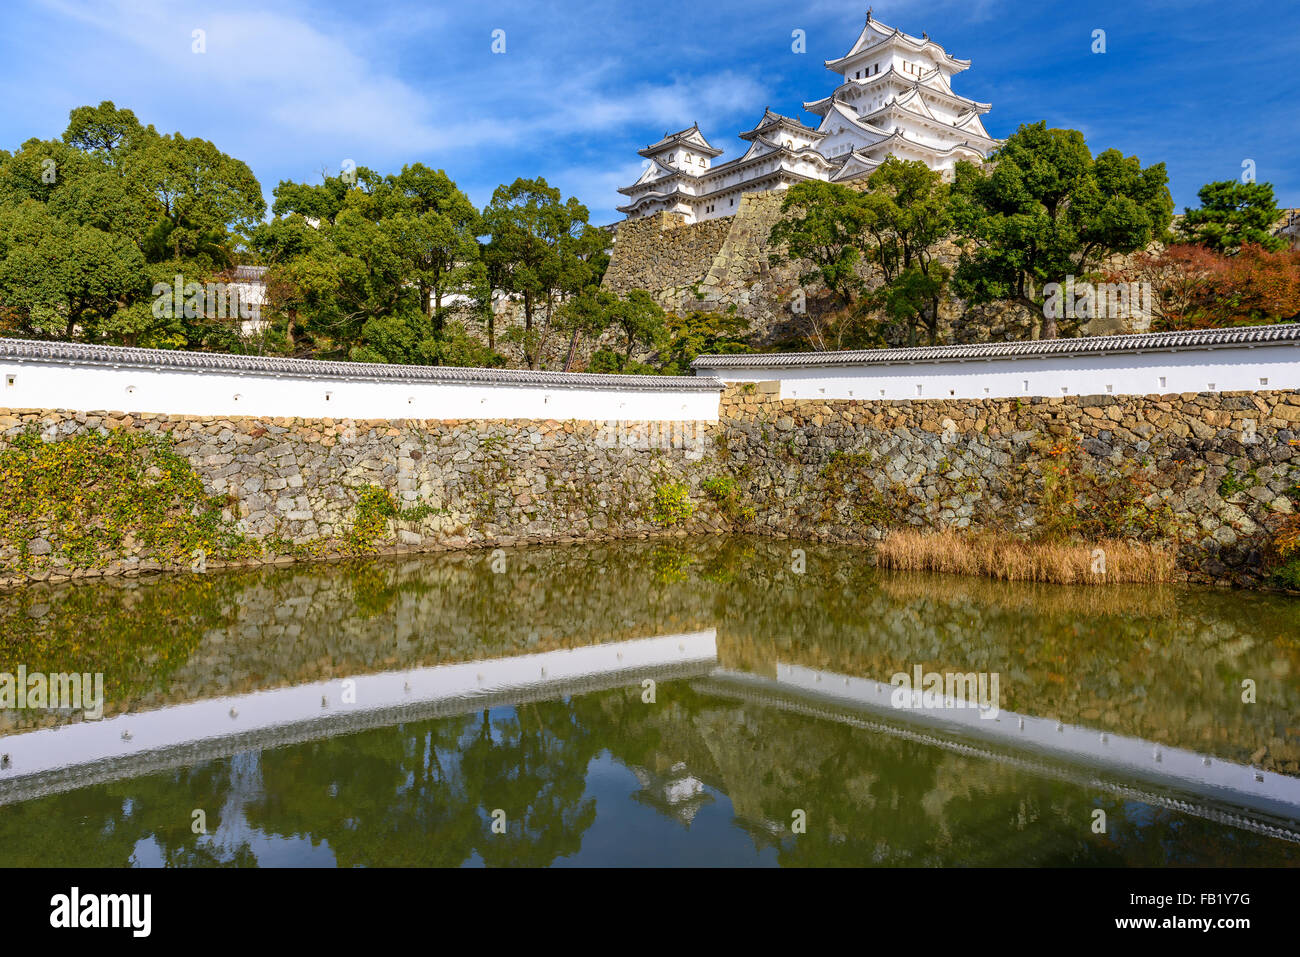 Himeji Castle in Himeji, Japan. Stock Photo